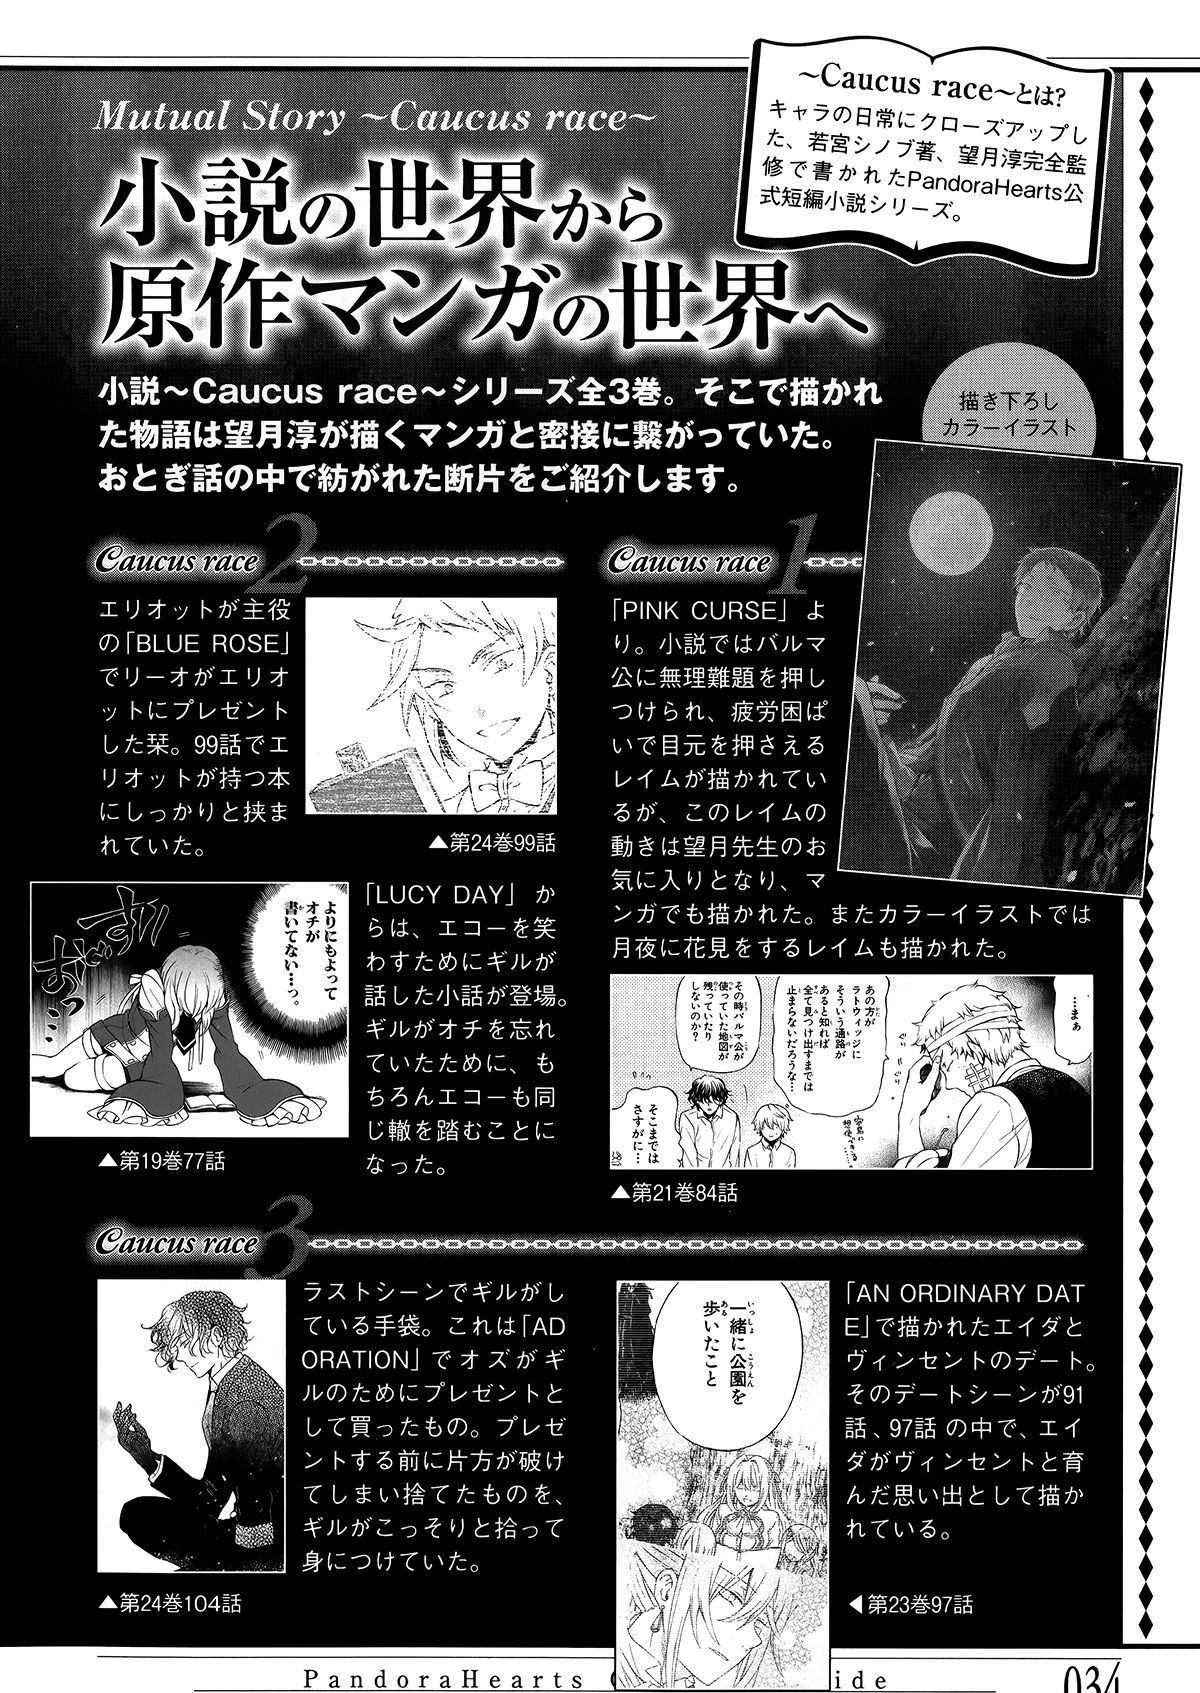 Pandora Hearts Guidebook 24+1: Last Dance パンドラハーツ オフィシャルガイド 24 + 1 ~Last Dance! 37